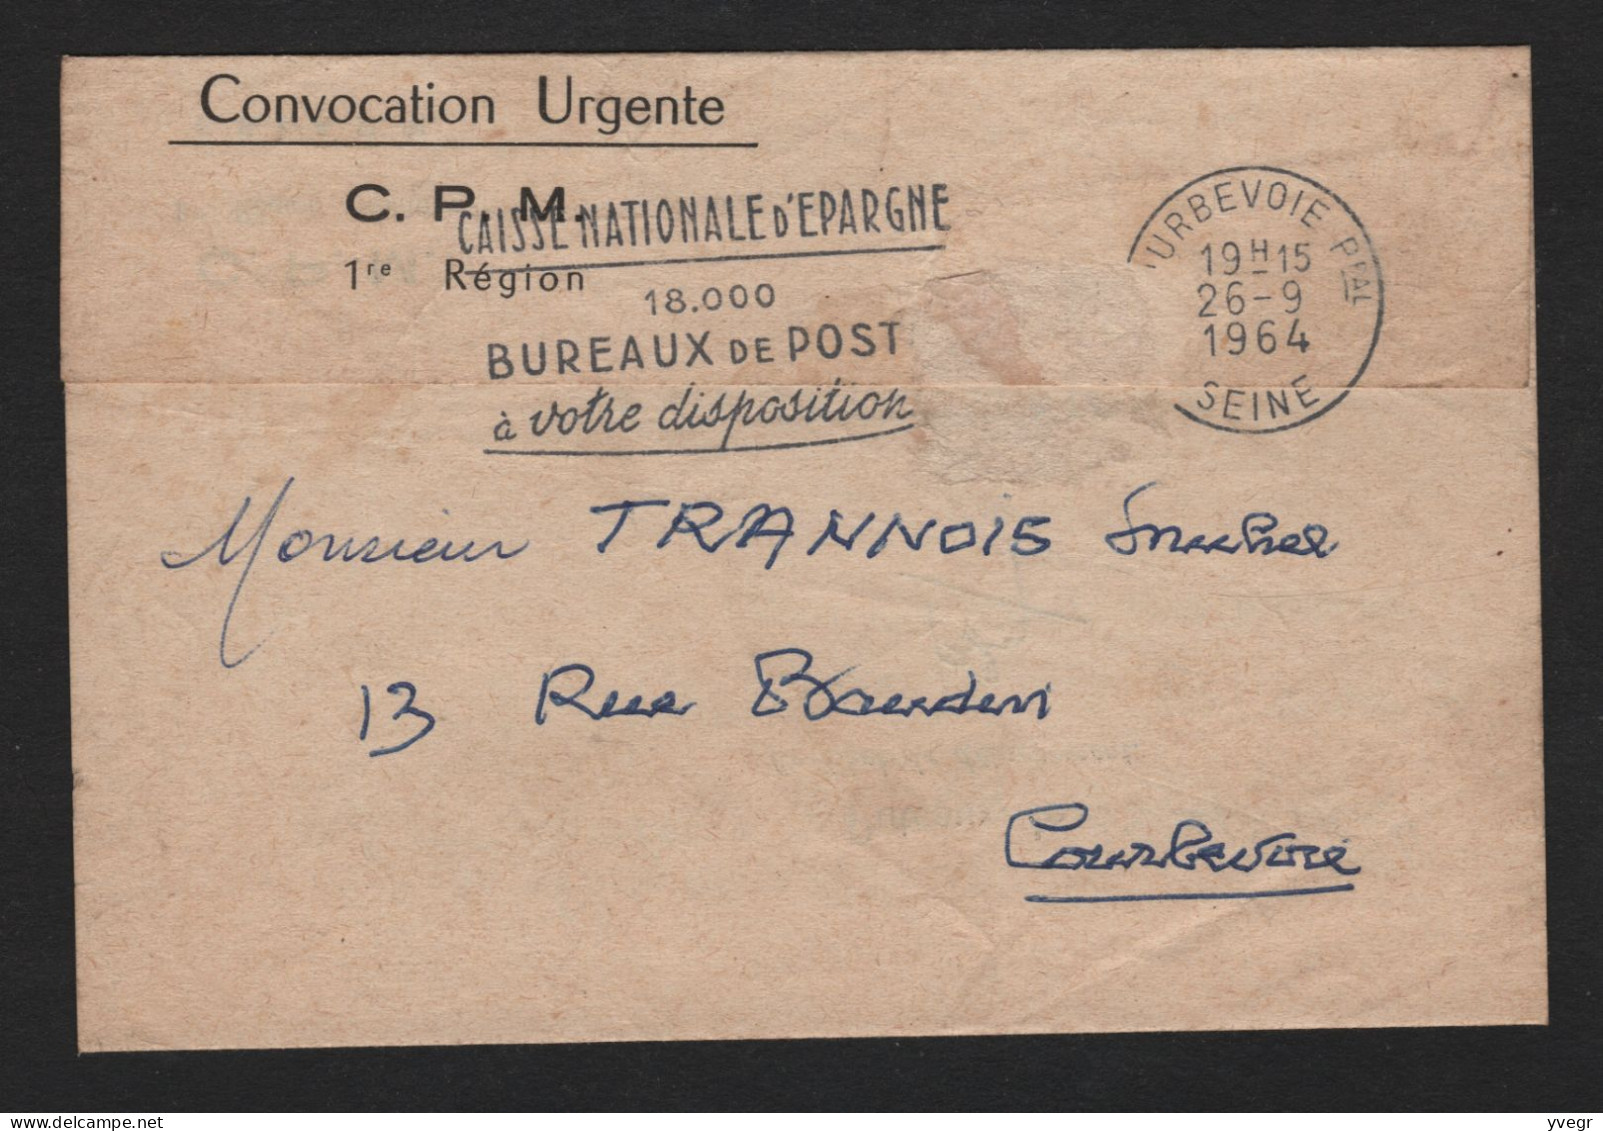 Militaria - Convocation URGENTE - C.P.M. 1re Région Militaire - E.S.I.A.P.M - à Puteaux Le 28 Septembre 1964 - Historical Documents